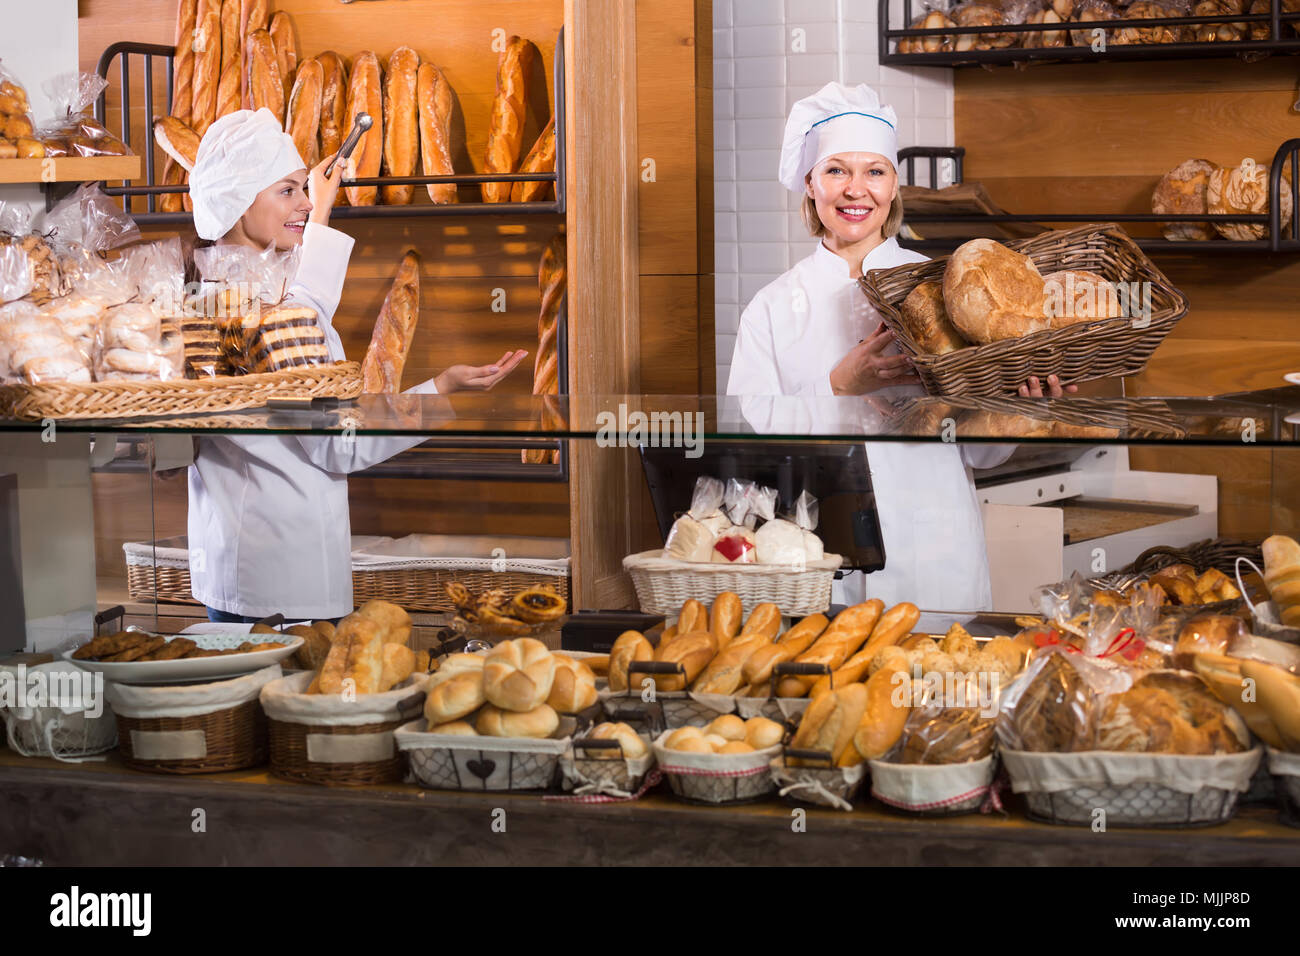 Smiling women vente boulangerie pâtisserie pains frais et du pain dans l' article Photo Stock - Alamy